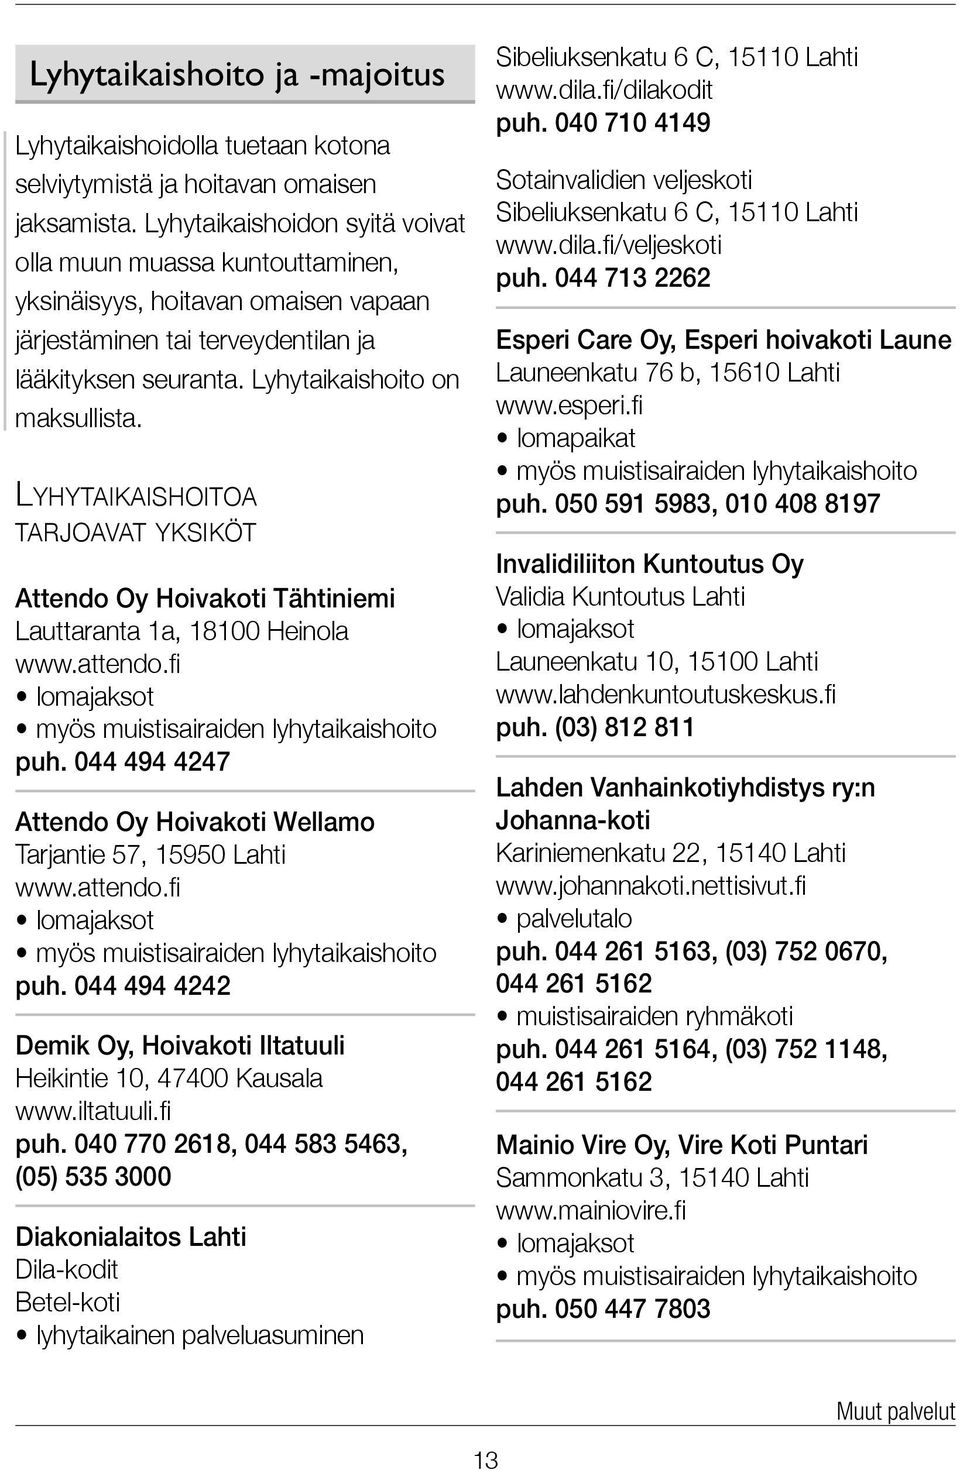 Lyhytaikaishoitoa tarjoavat yksiköt Attendo Oy Hoivakoti Tähtiniemi Lauttaranta 1a, 18100 Heinola www.attendo.fi lomajaksot myös muistisairaiden lyhytaikaishoito puh.